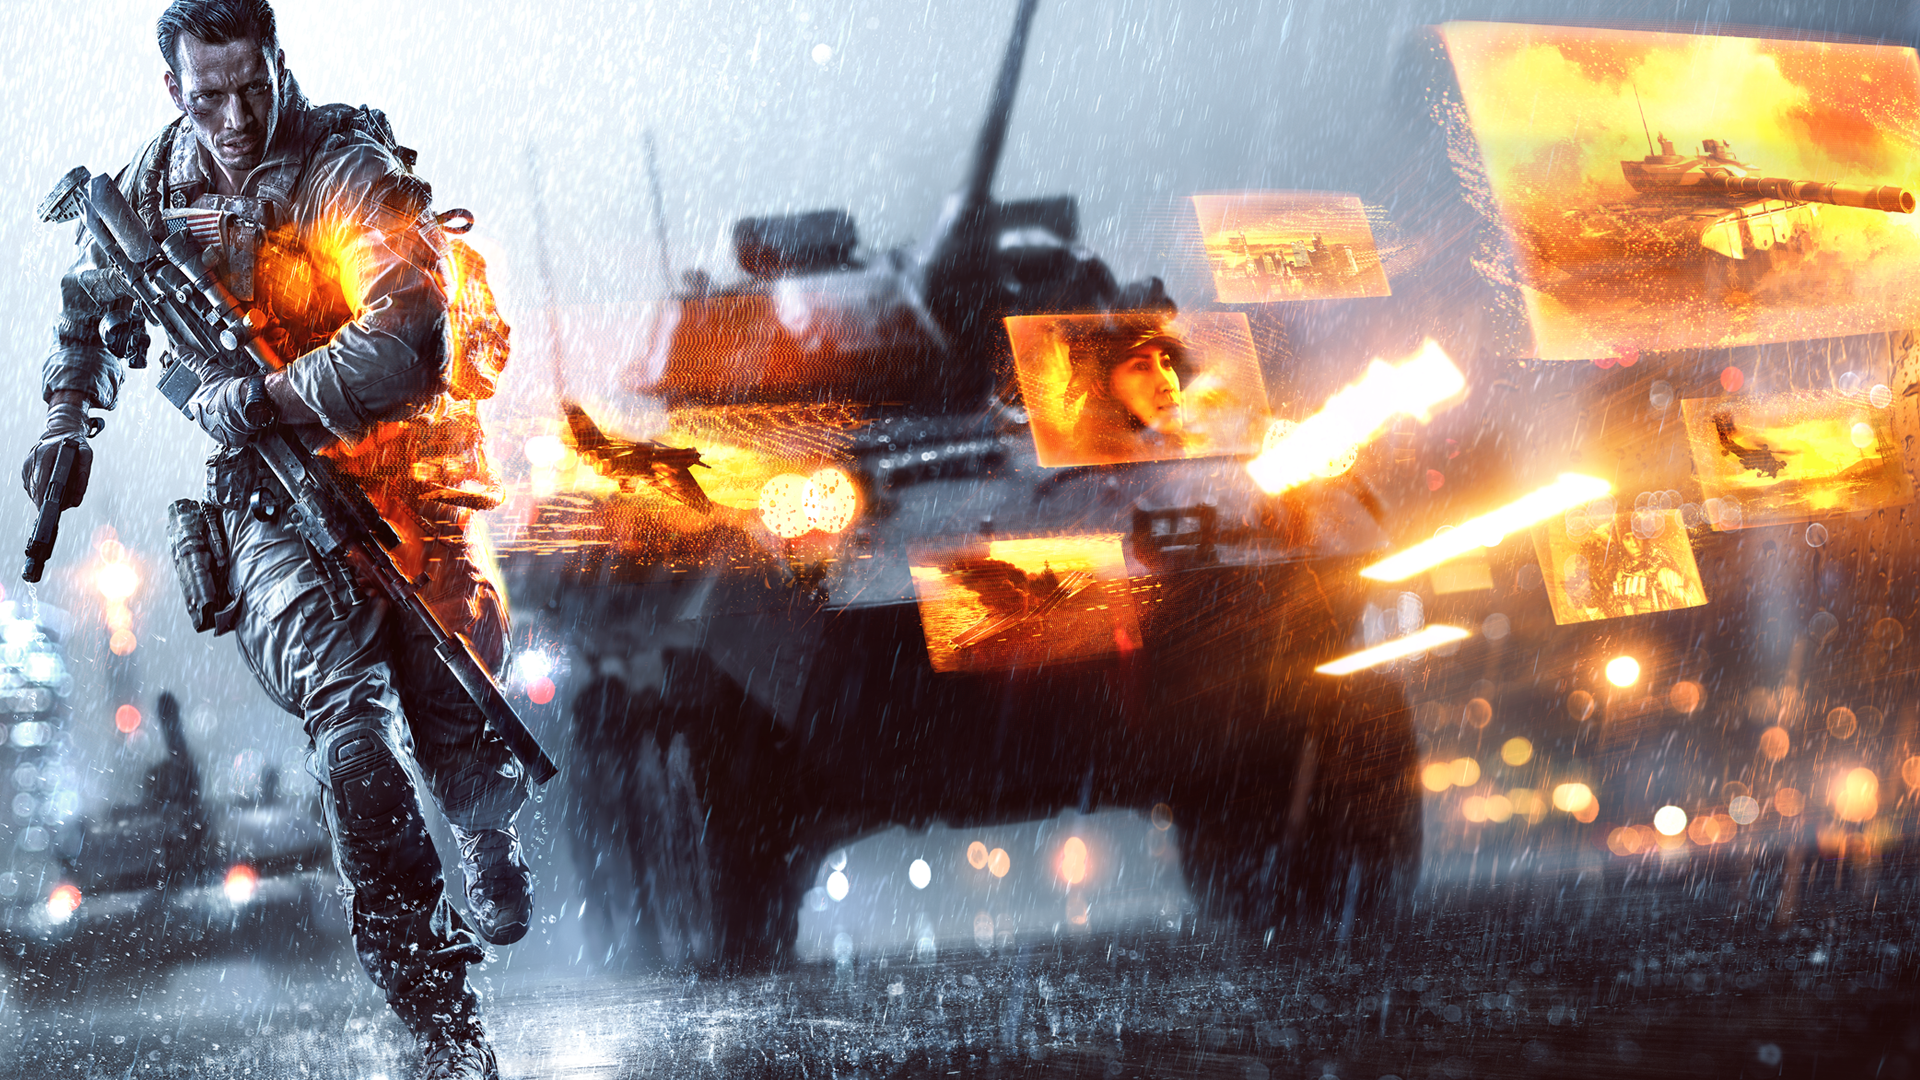 Buy Battlefield 4 Microsoft Store En In